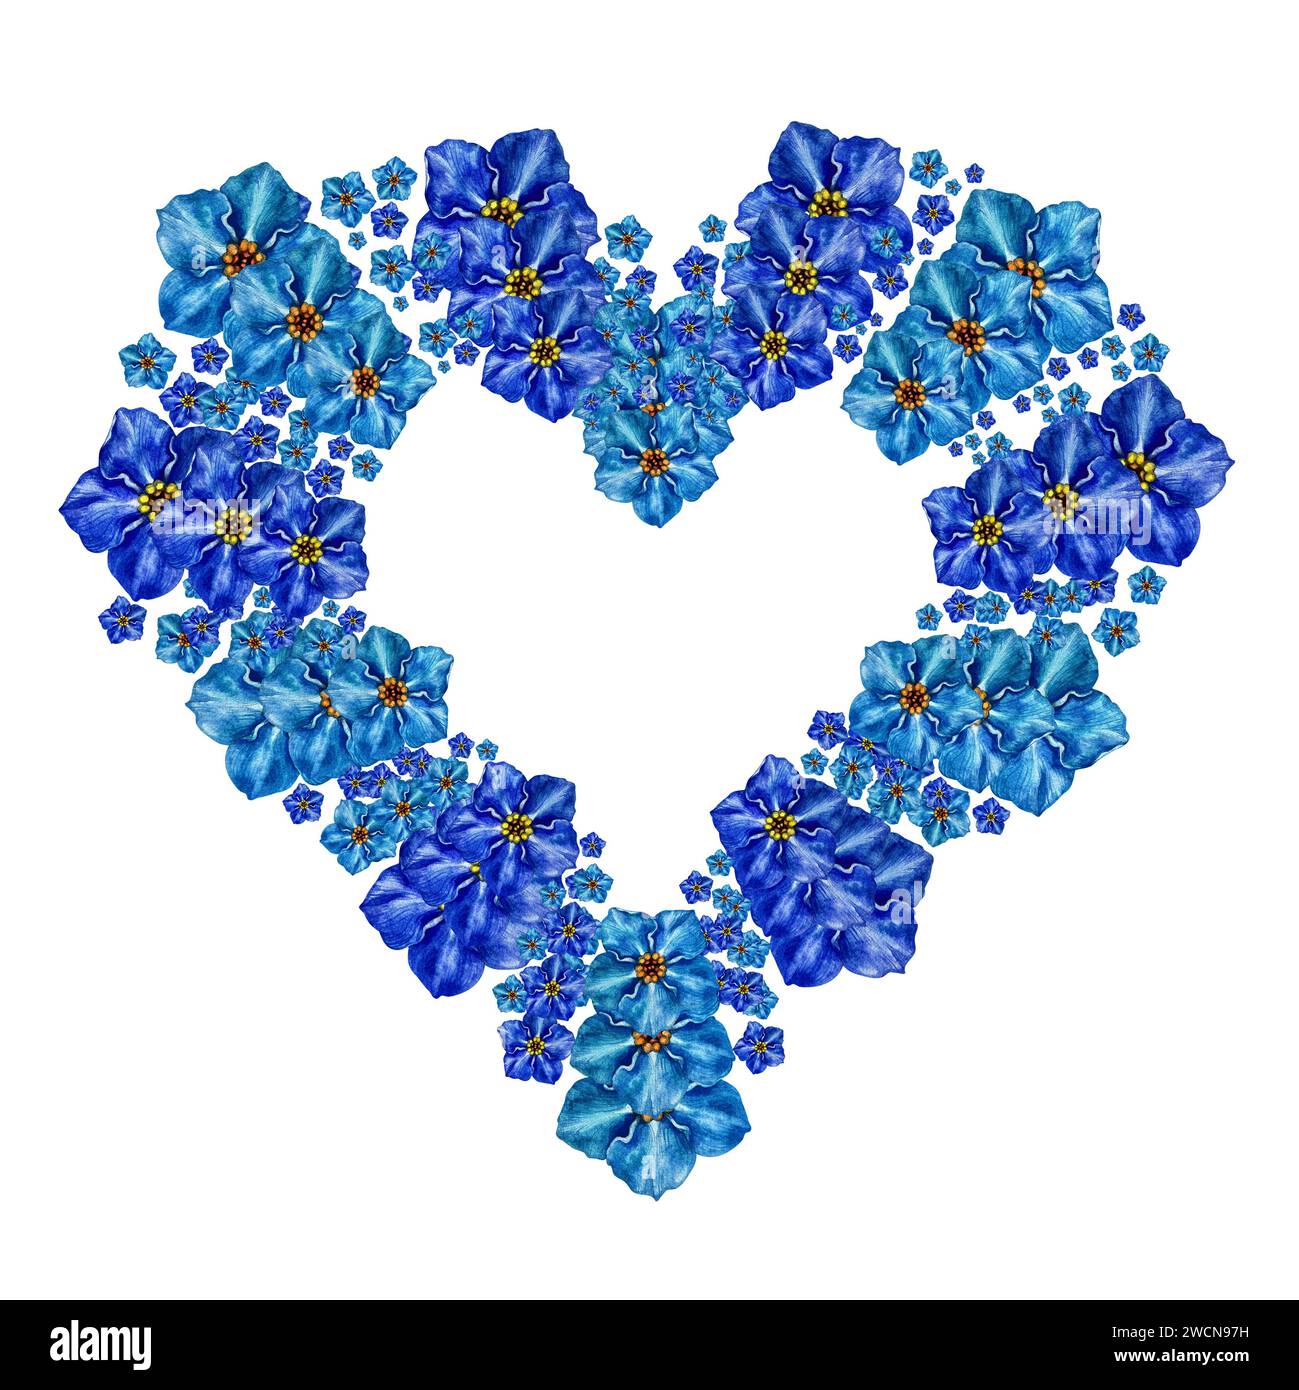 Coeur floral bleu avec délicat Forget Me pas fleurs peintes à l'aquarelle. Illustration de la composition florale pour invitations de mariage, impressions, carte Banque D'Images